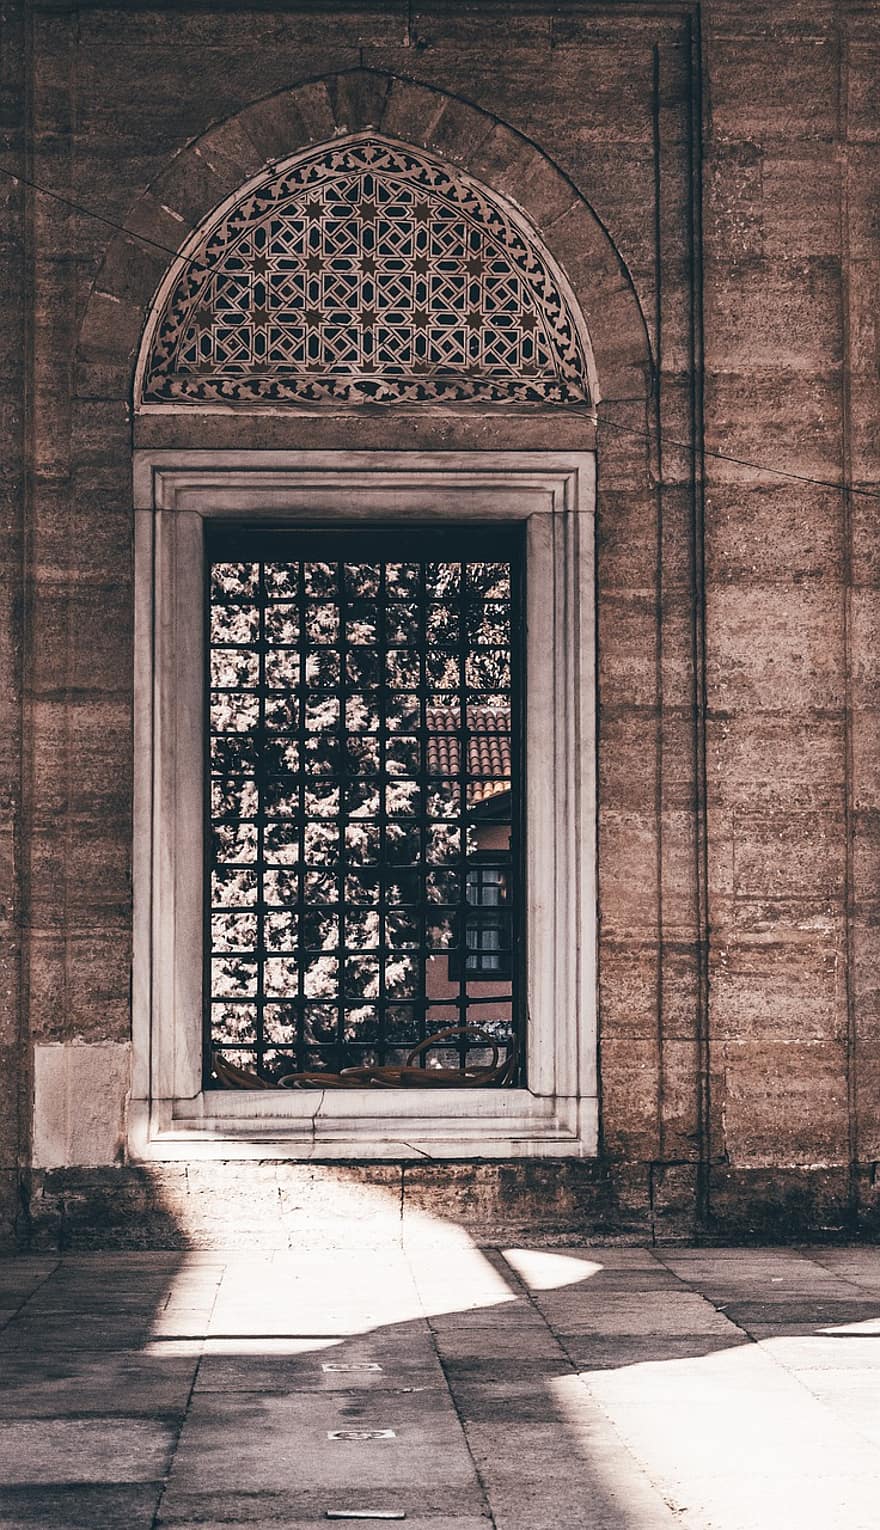 la fenêtre, mosquée, architecture, Islam, dinde, religion, rendez-vous amoureux, Voyage, ville, historique